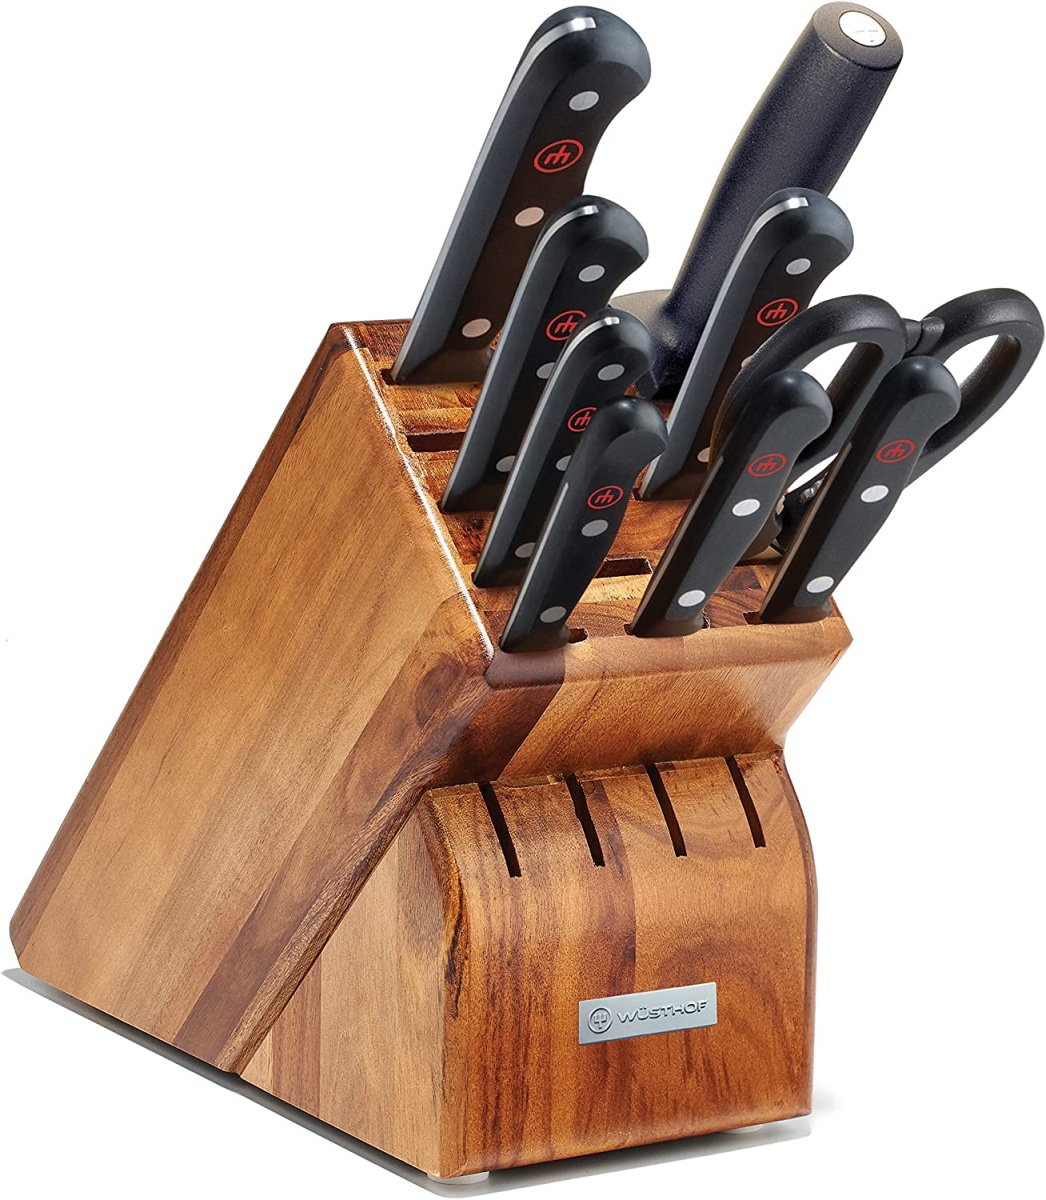 Wusthof Gourmet Stamped Steak Knives, Set of 6 + Reviews